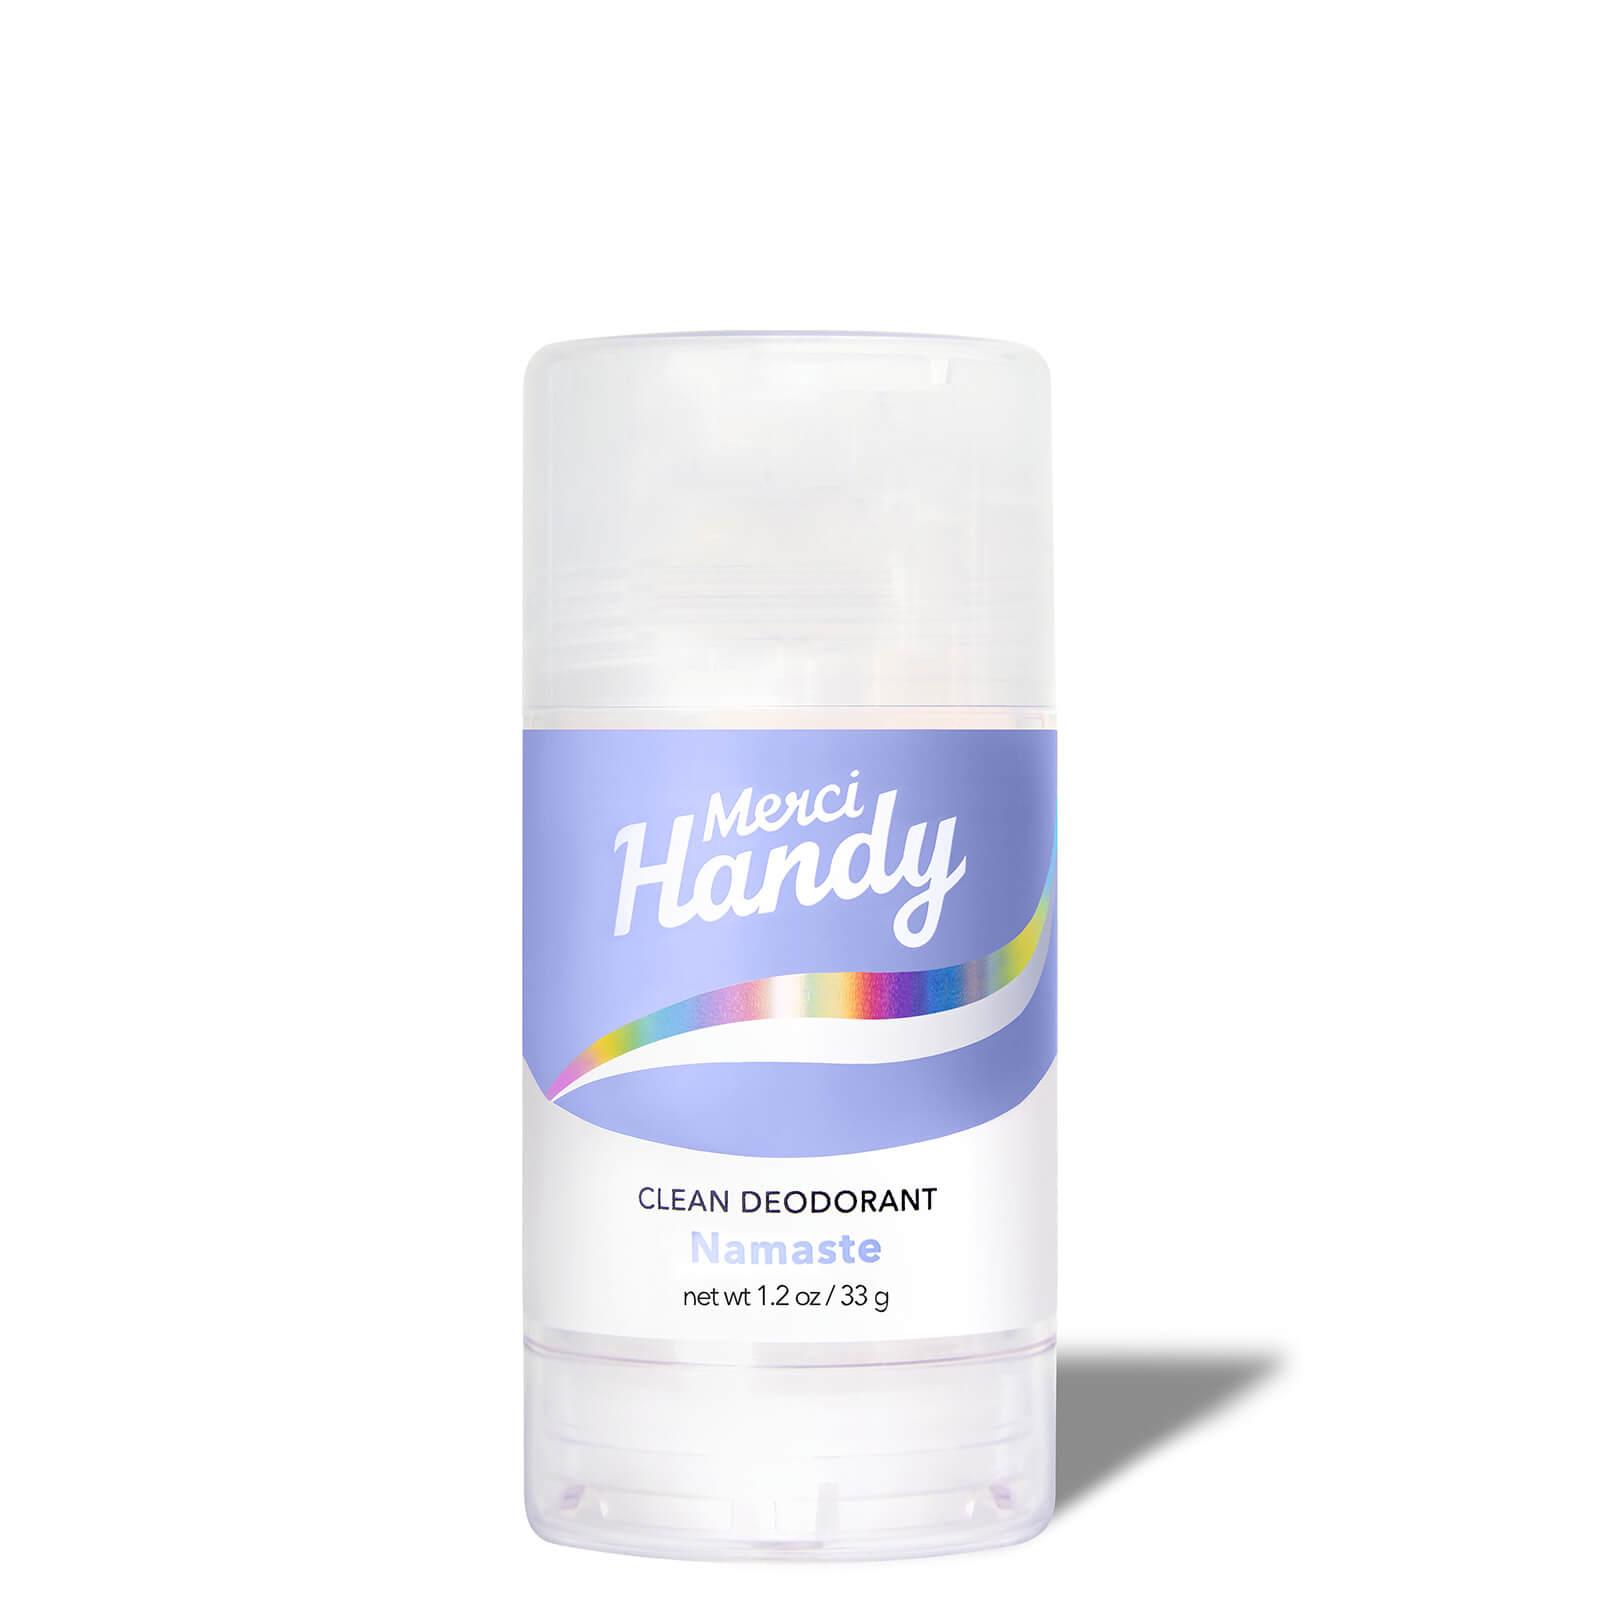 Merci Handy Clean Deodorant 33g (Various Fragrance) - Namaste von Merci Handy